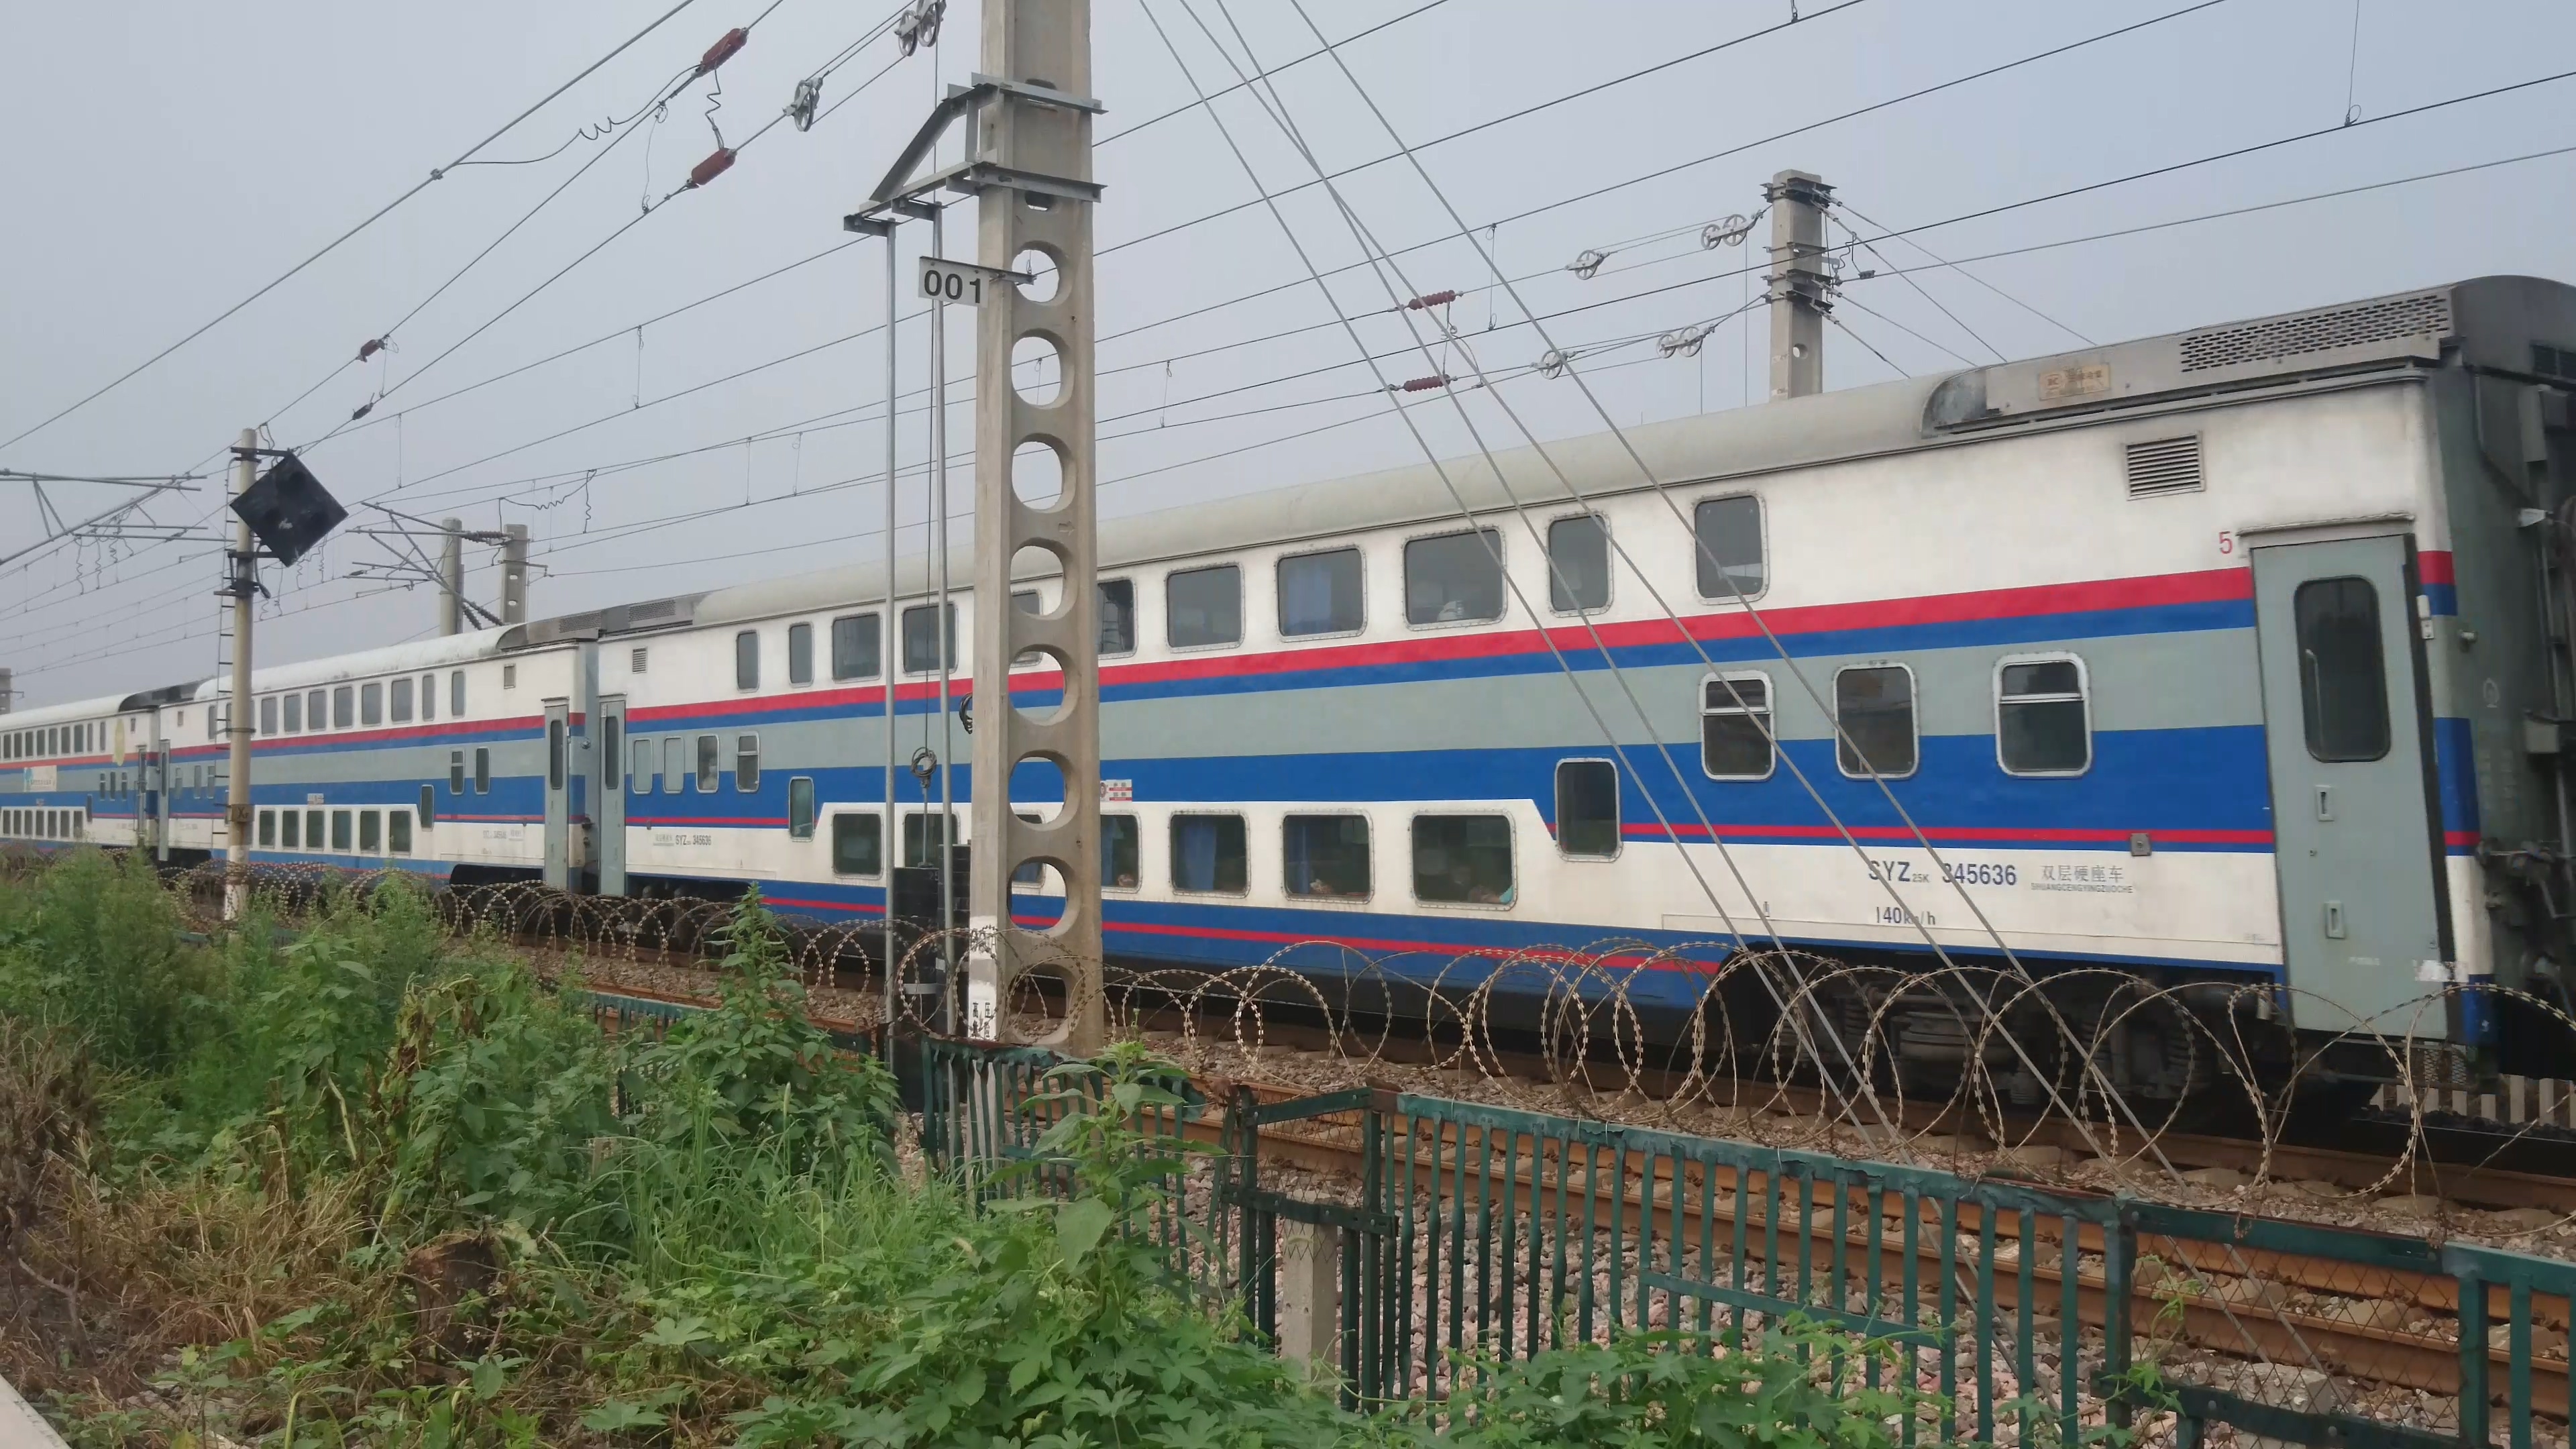 双层列车，为什么越来越少见了？ 第十六届中国国际轨道交通展览会